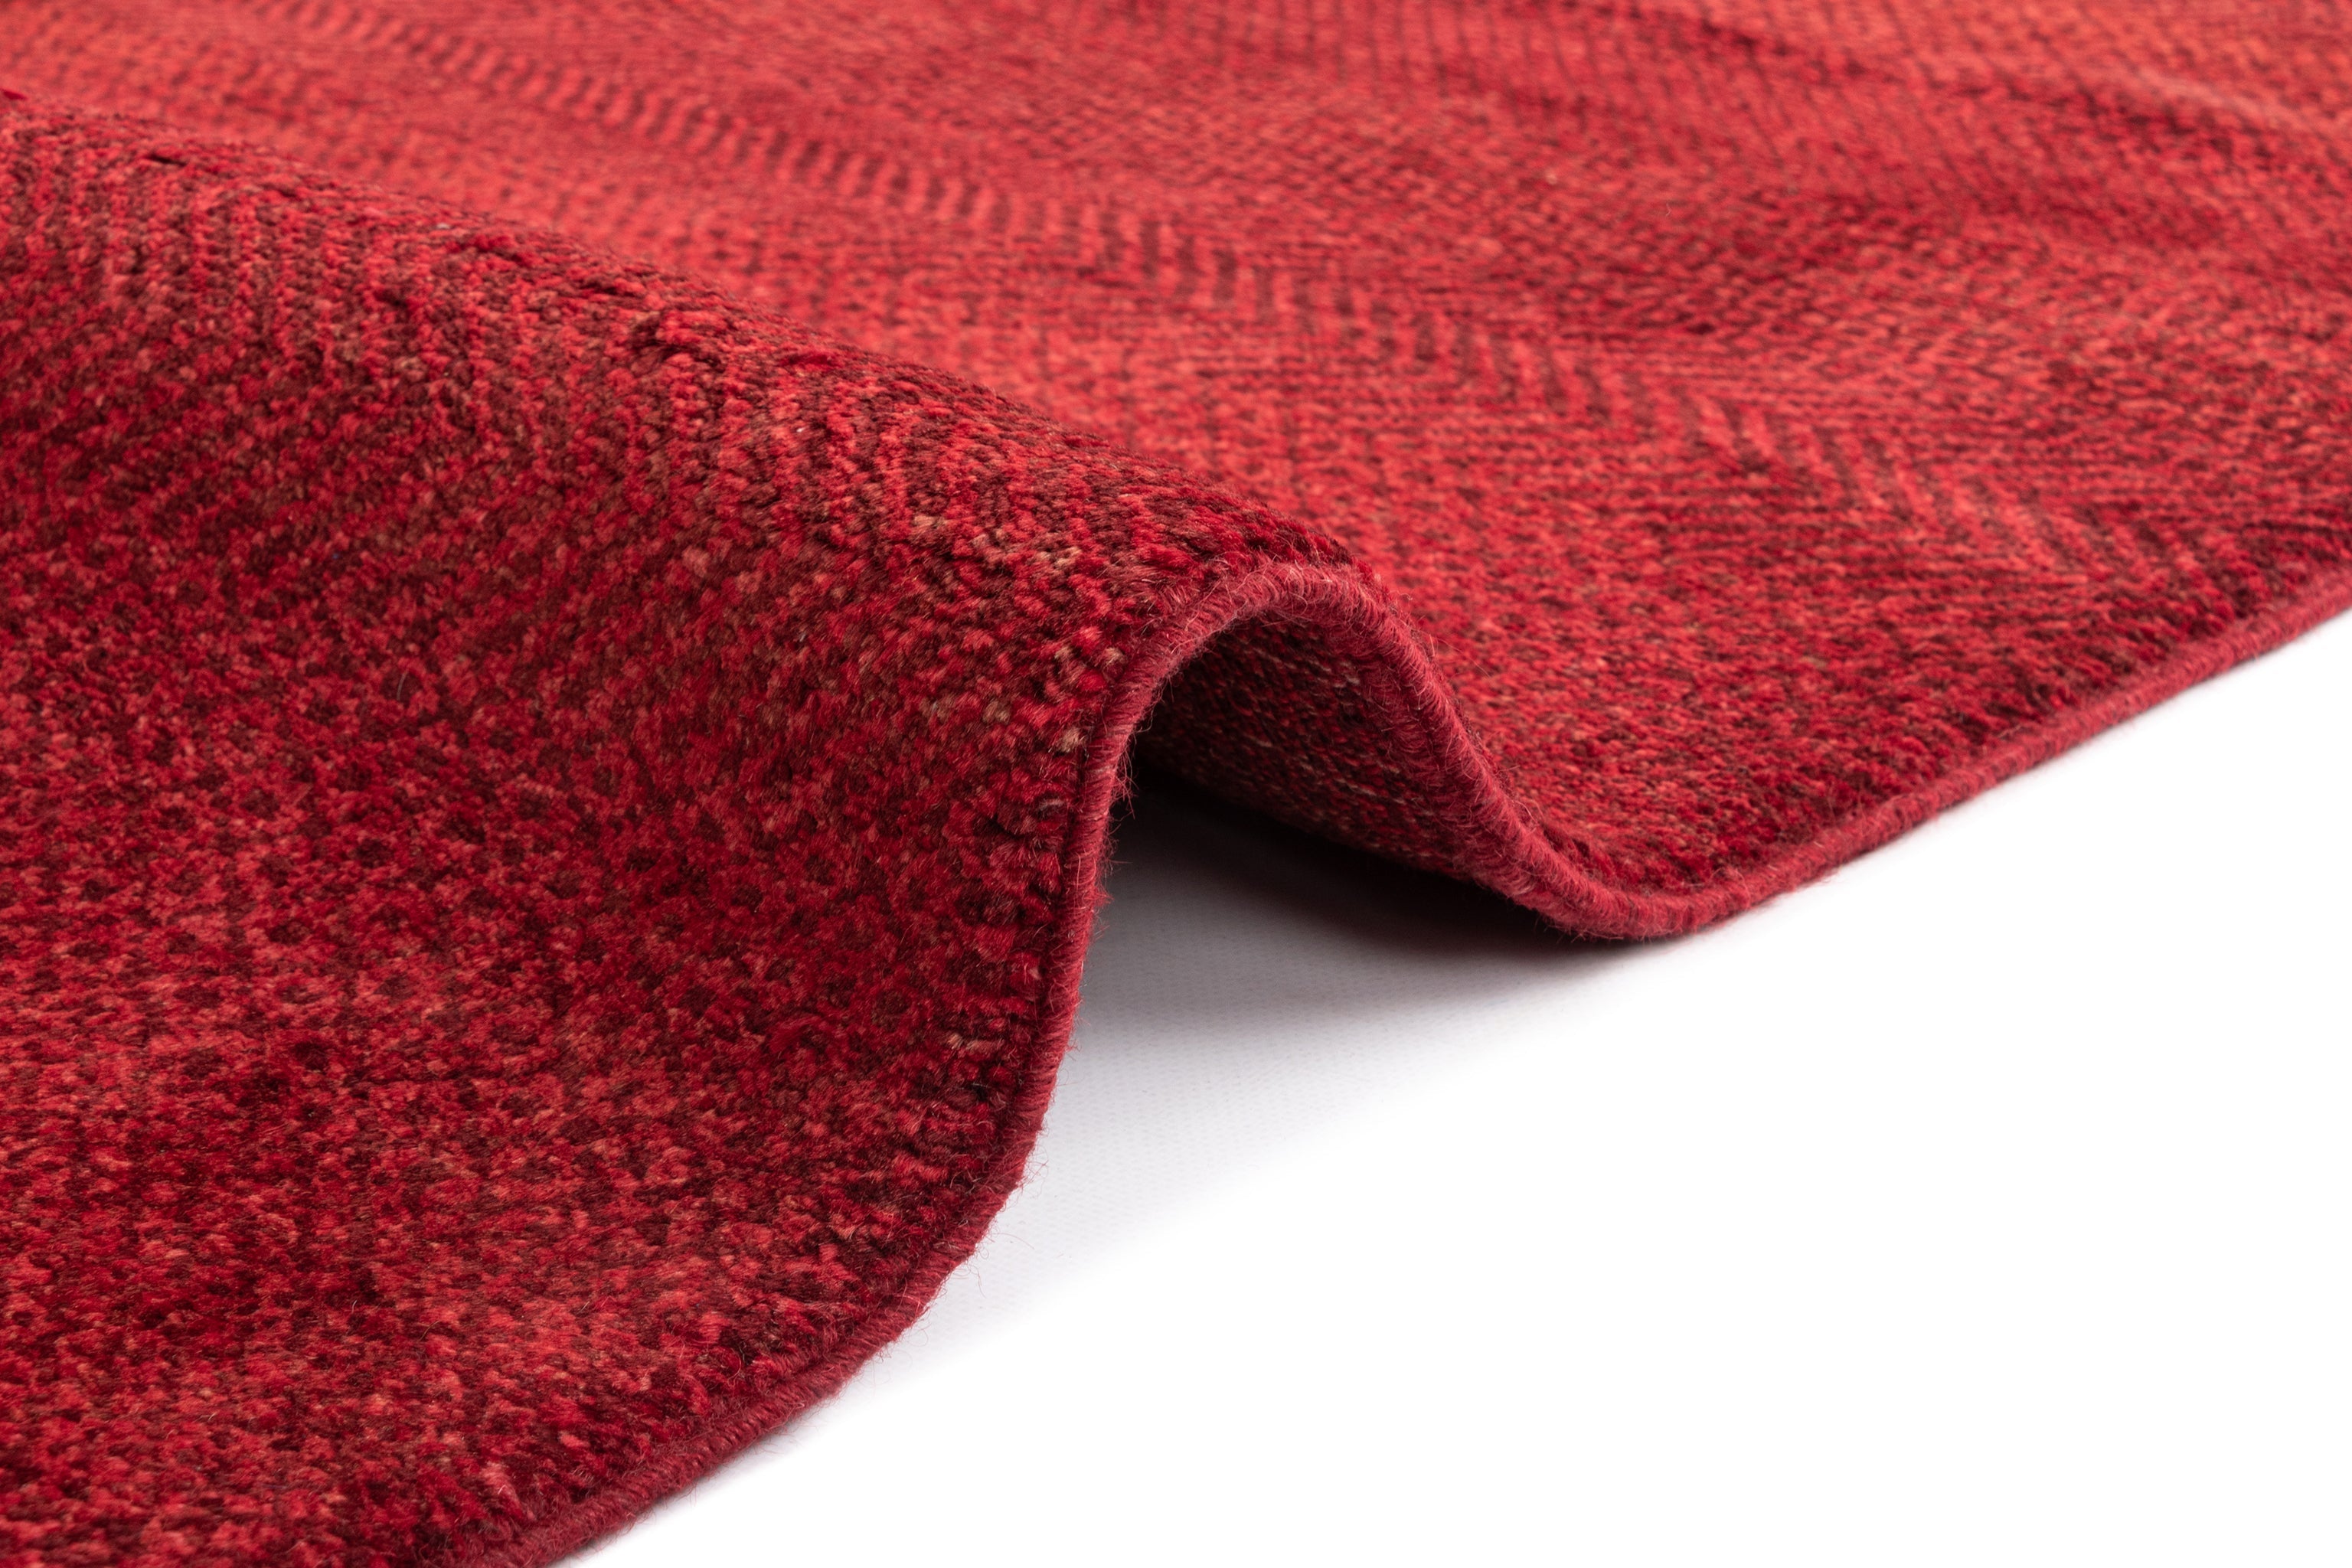 193x123 Juma in Rot präsentiert im Onlineshop von KAQTU Design AG. Teppich ist von Vidal